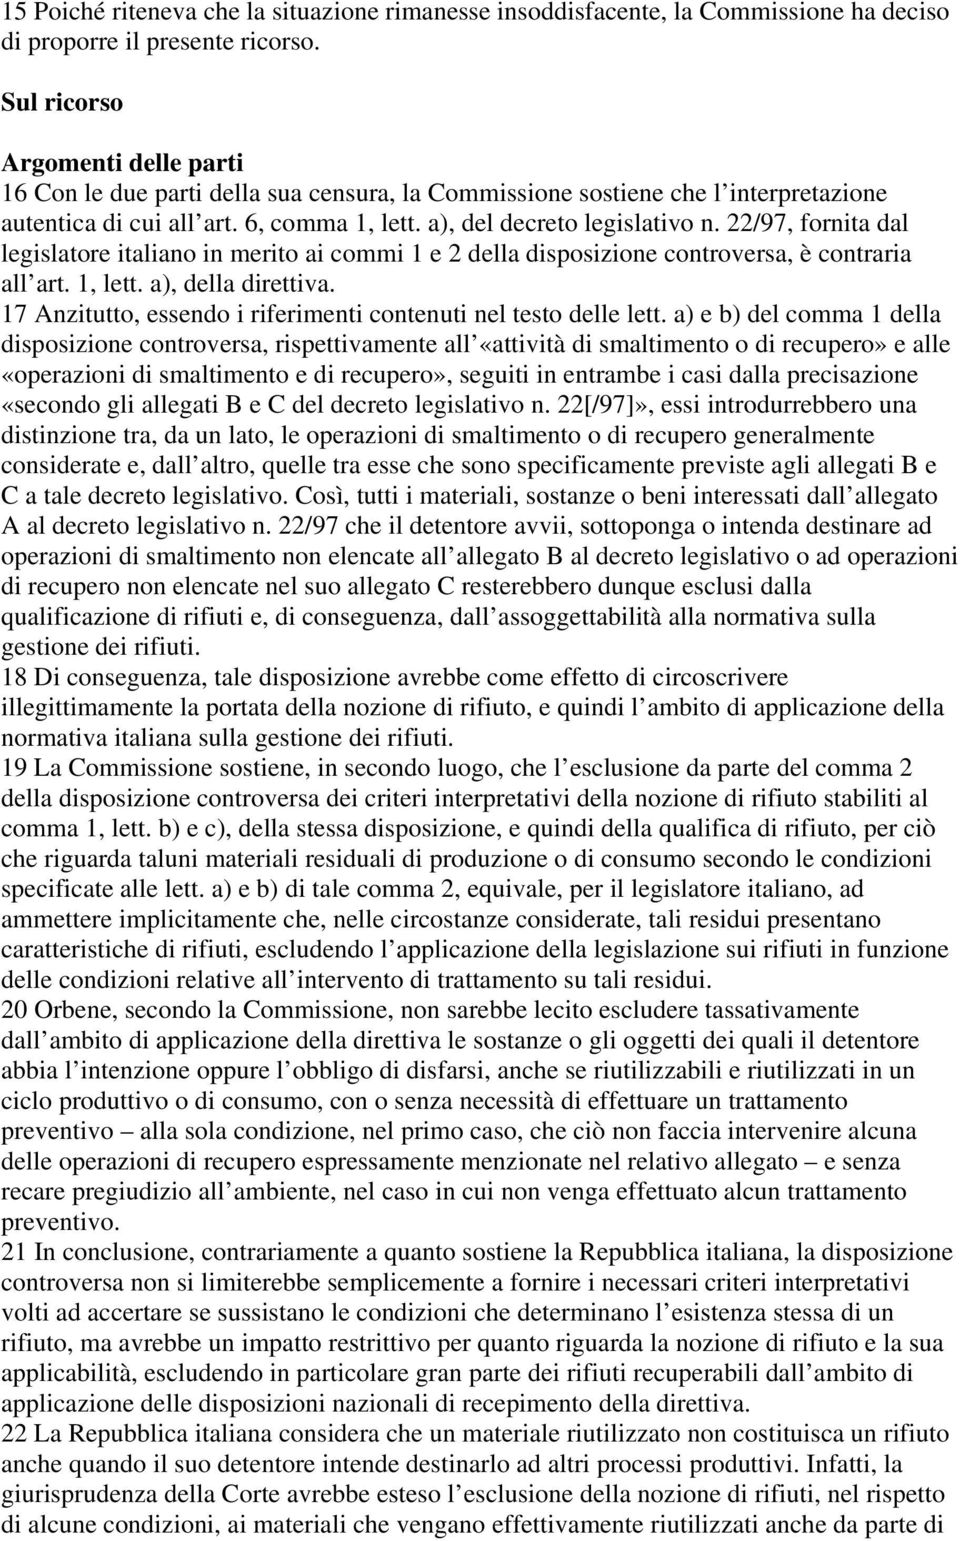 22/97, fornita dal legislatore italiano in merito ai commi 1 e 2 della disposizione controversa, è contraria all art. 1, lett. a), della direttiva.